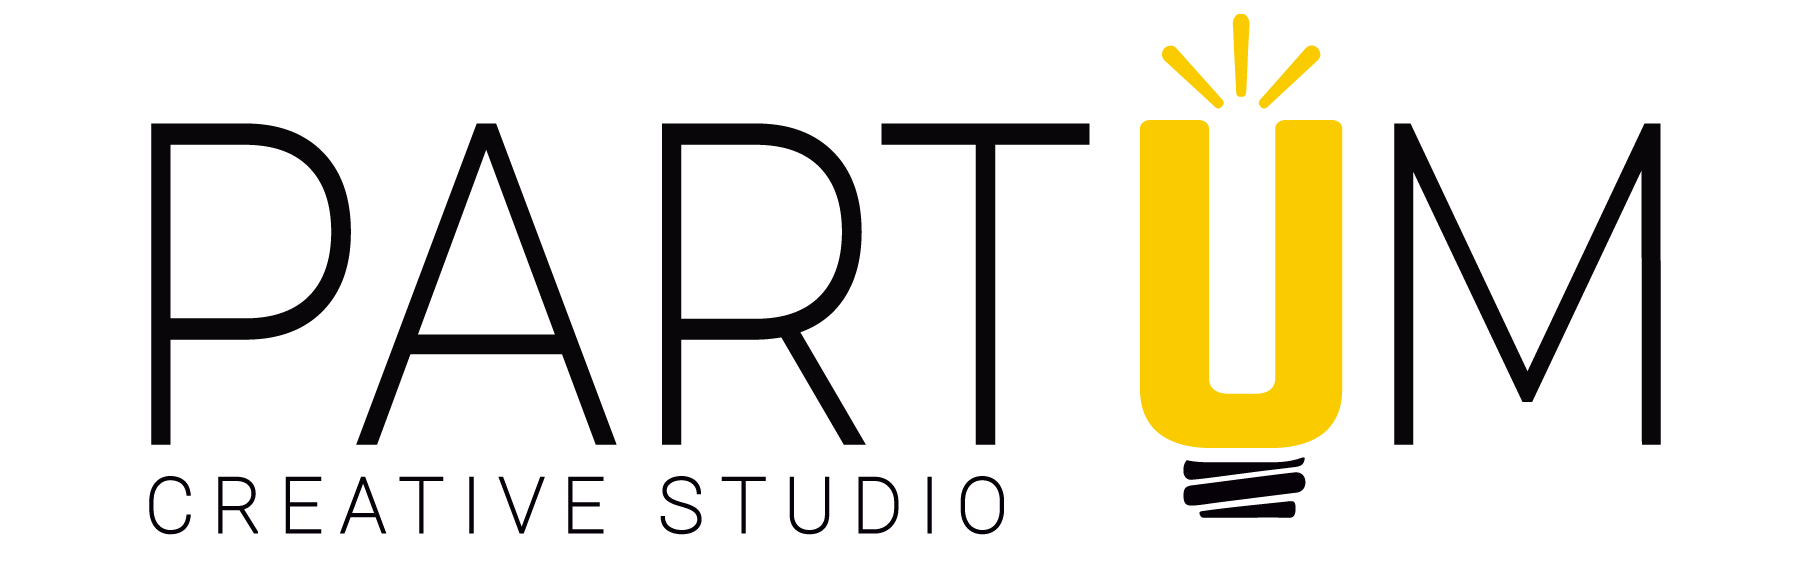 Partum Creative Studio - Logo